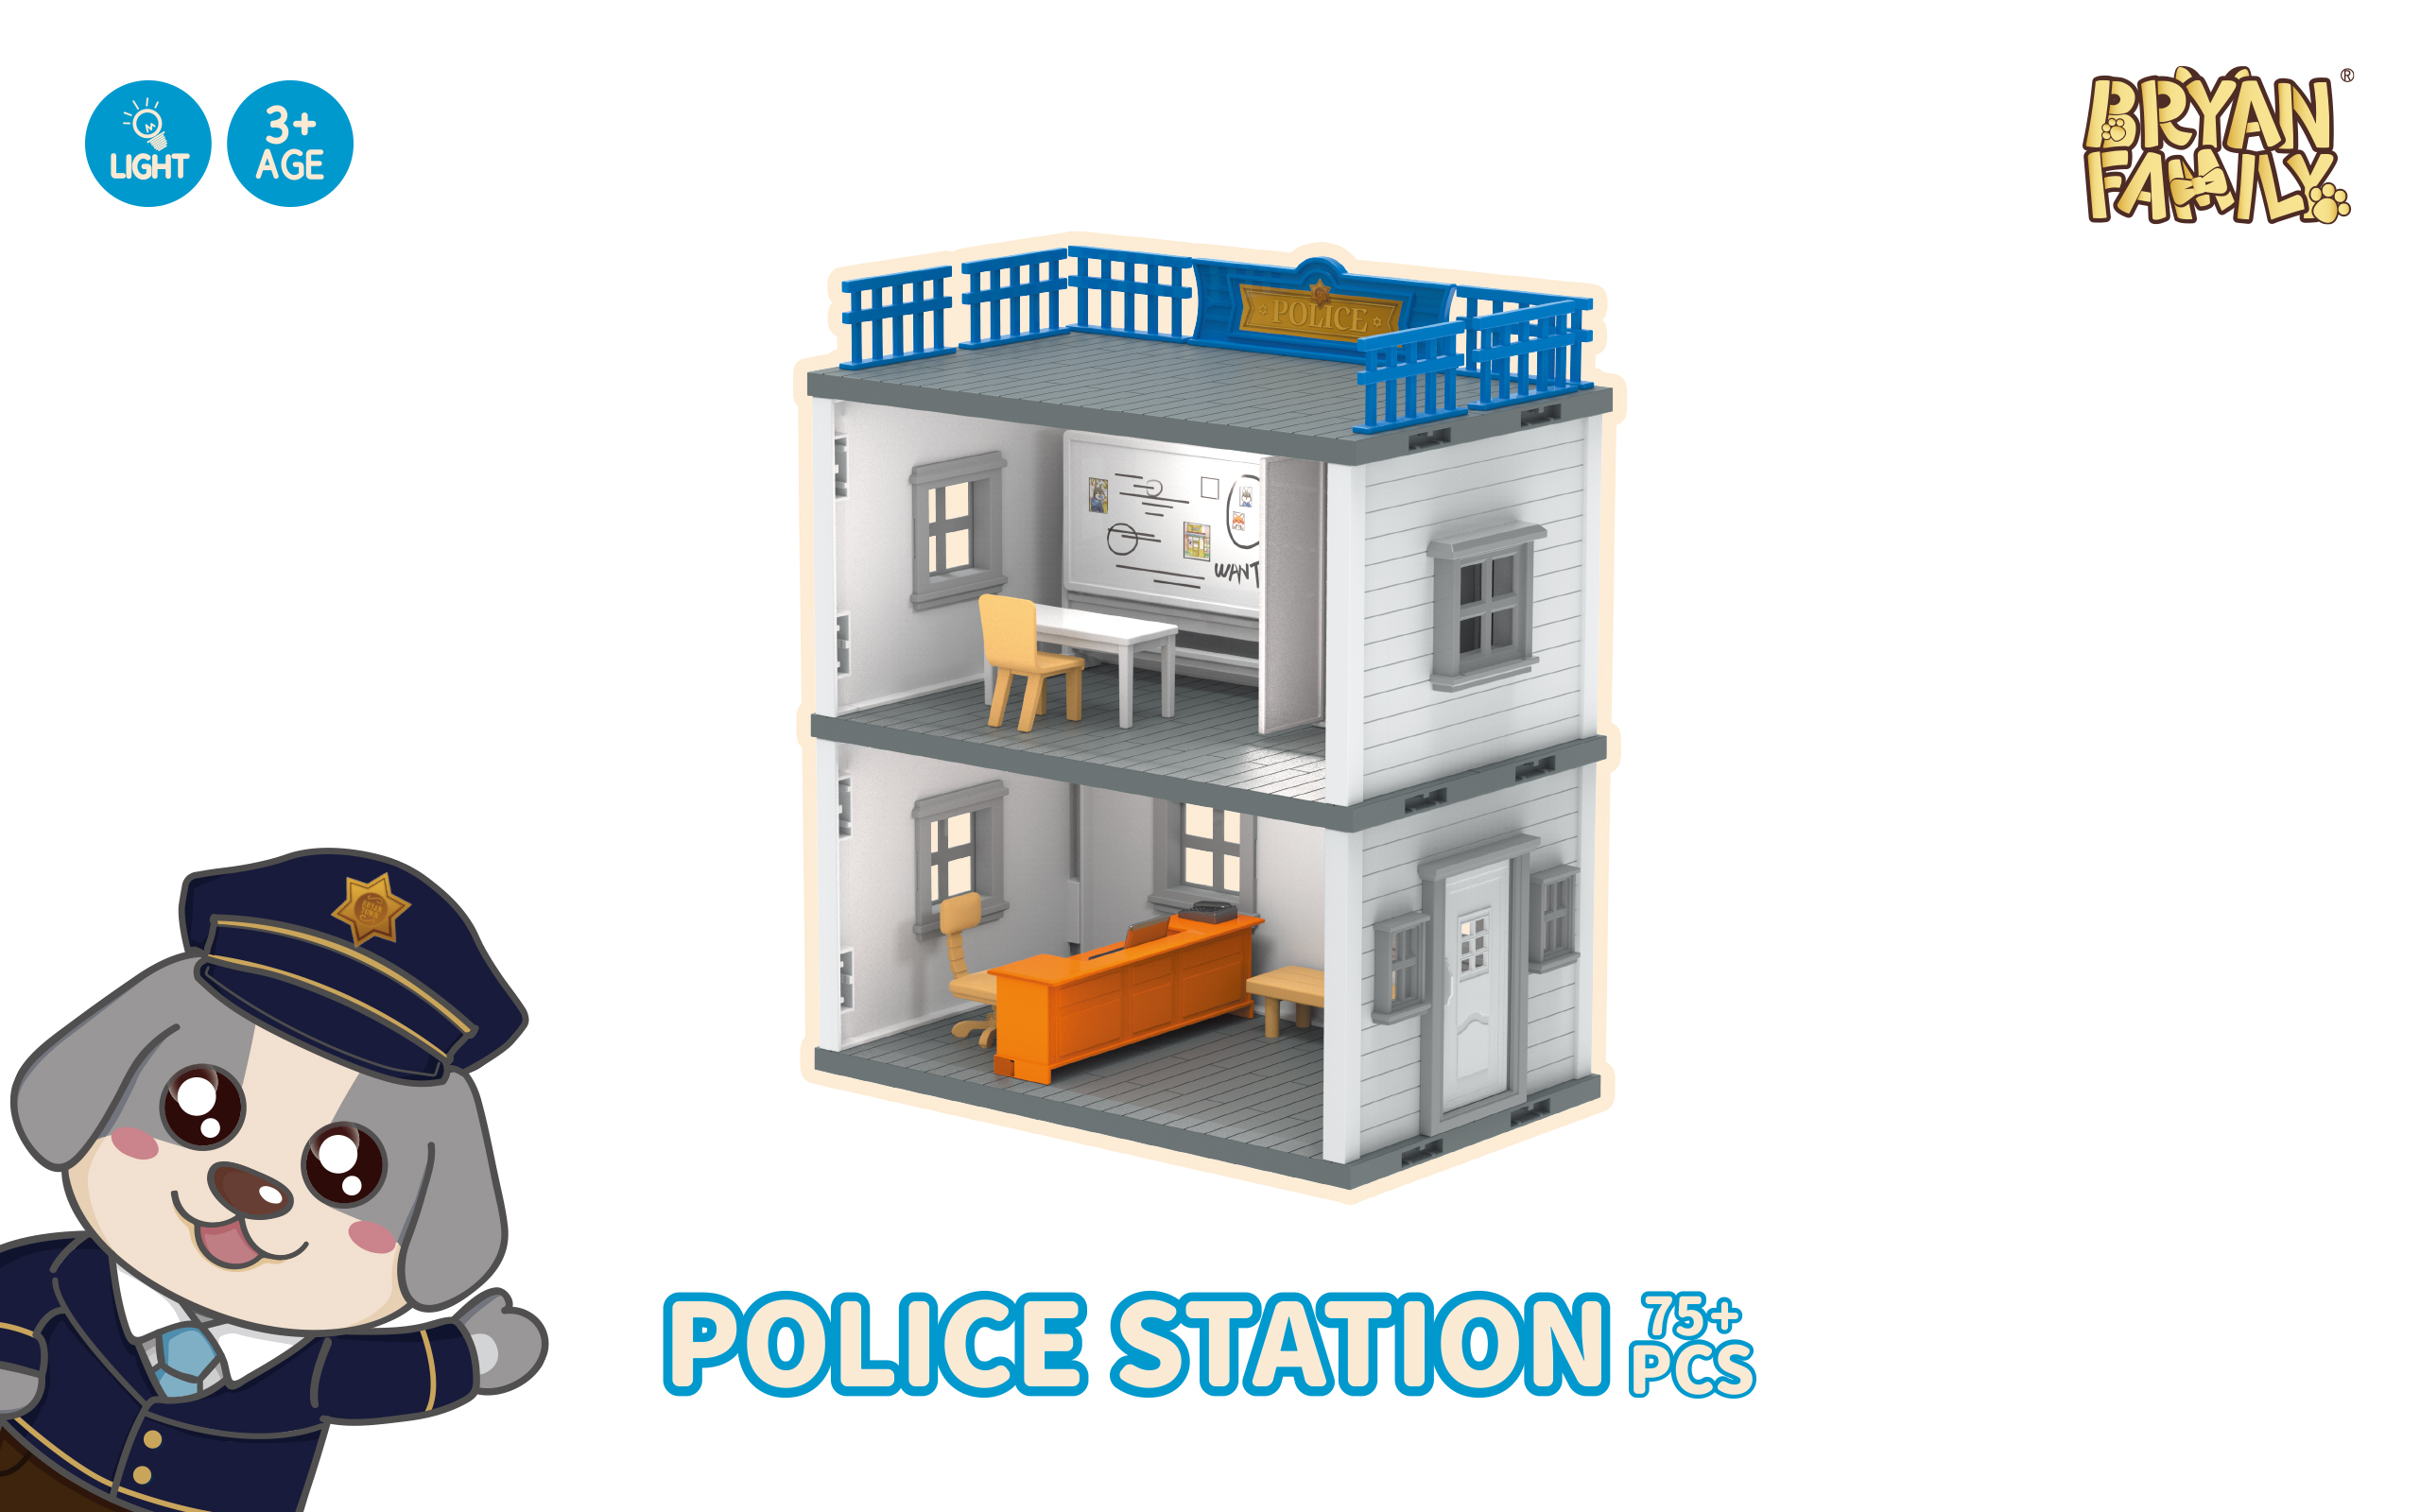 Police Station 75+PCS